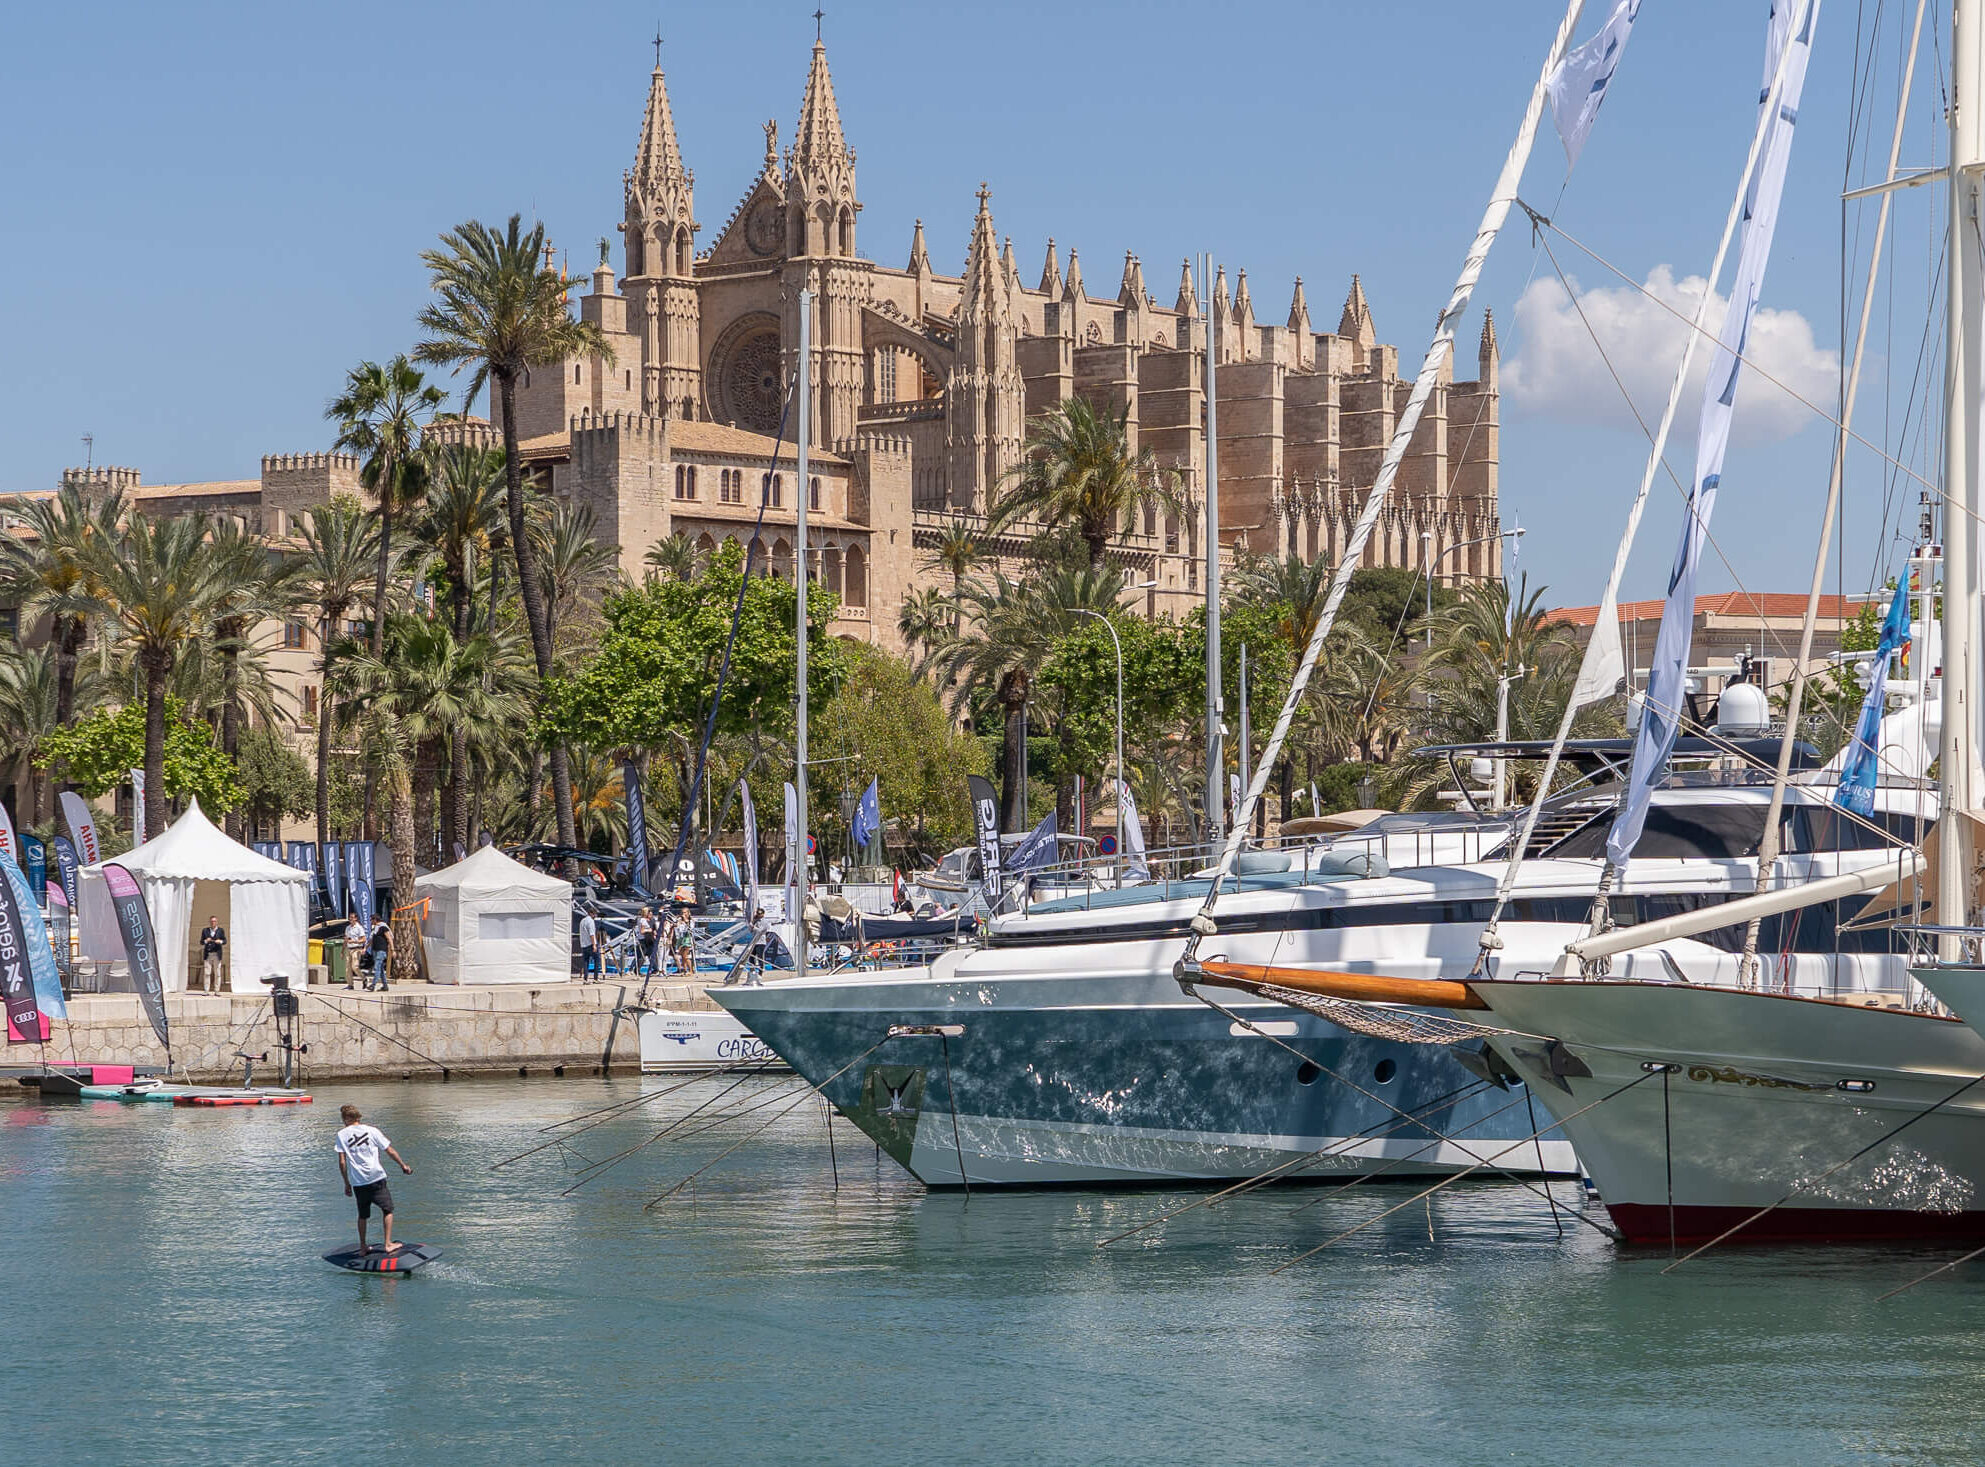 La próxima edición del Palma International Boat Show tendrá lugar del 27 al 30 de abril de 2023 en el Moll Vell de Palma